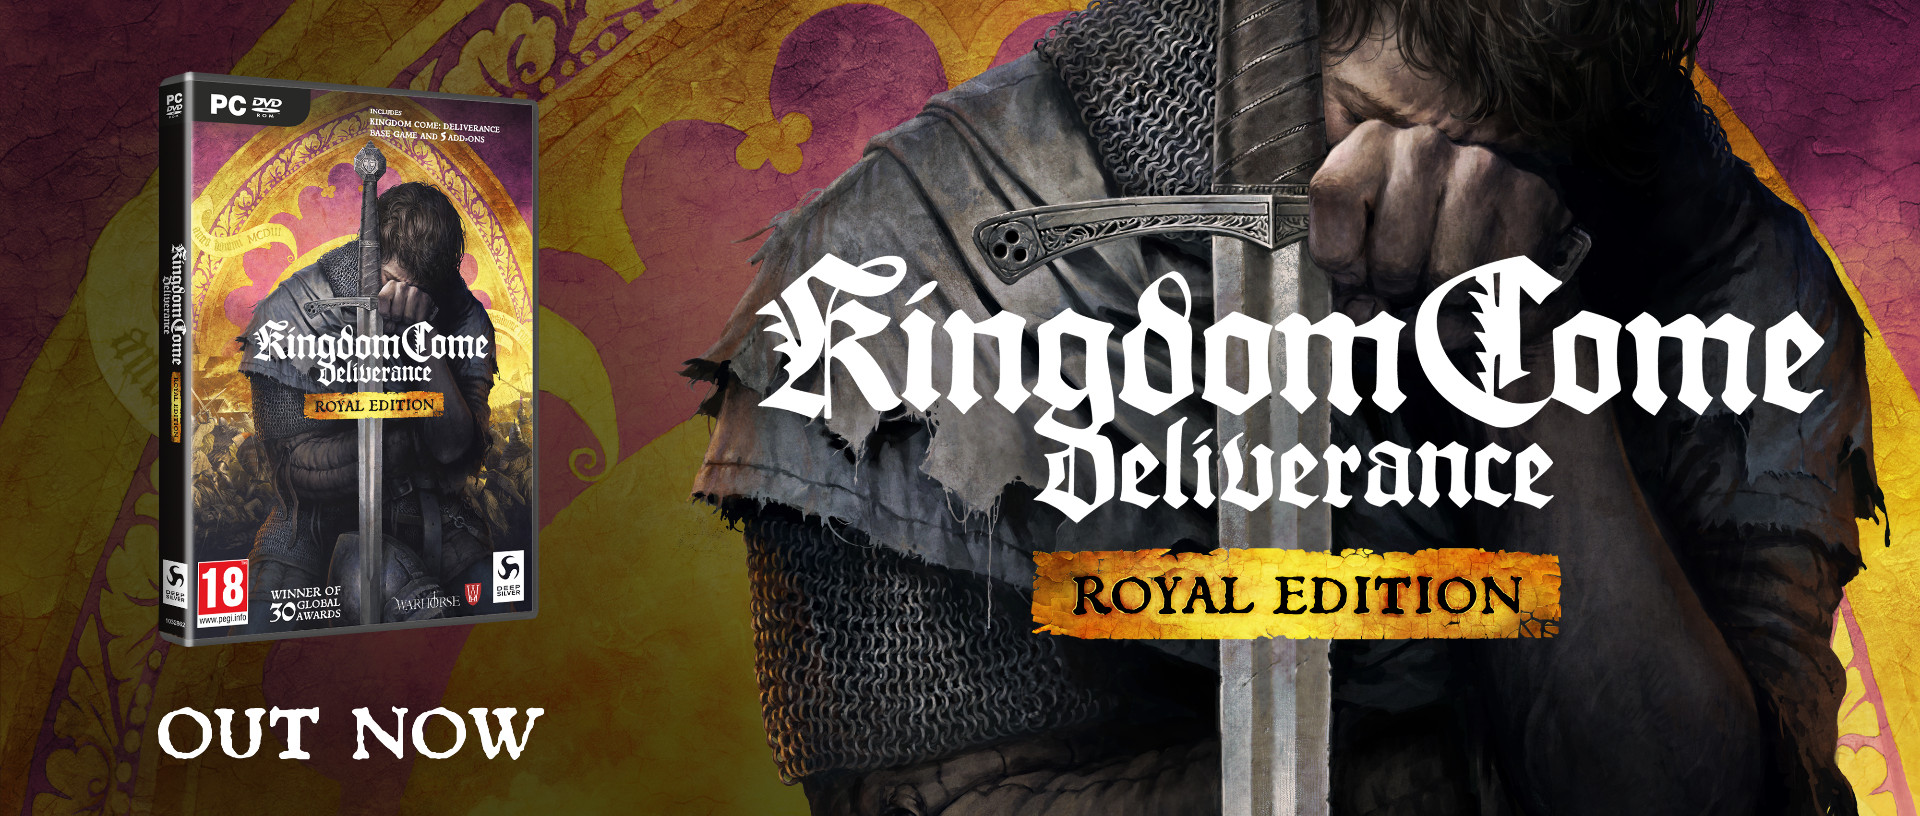 Kingdom Come Deliverance Royal Edition Cosa Contiene • Gamempireit 9937